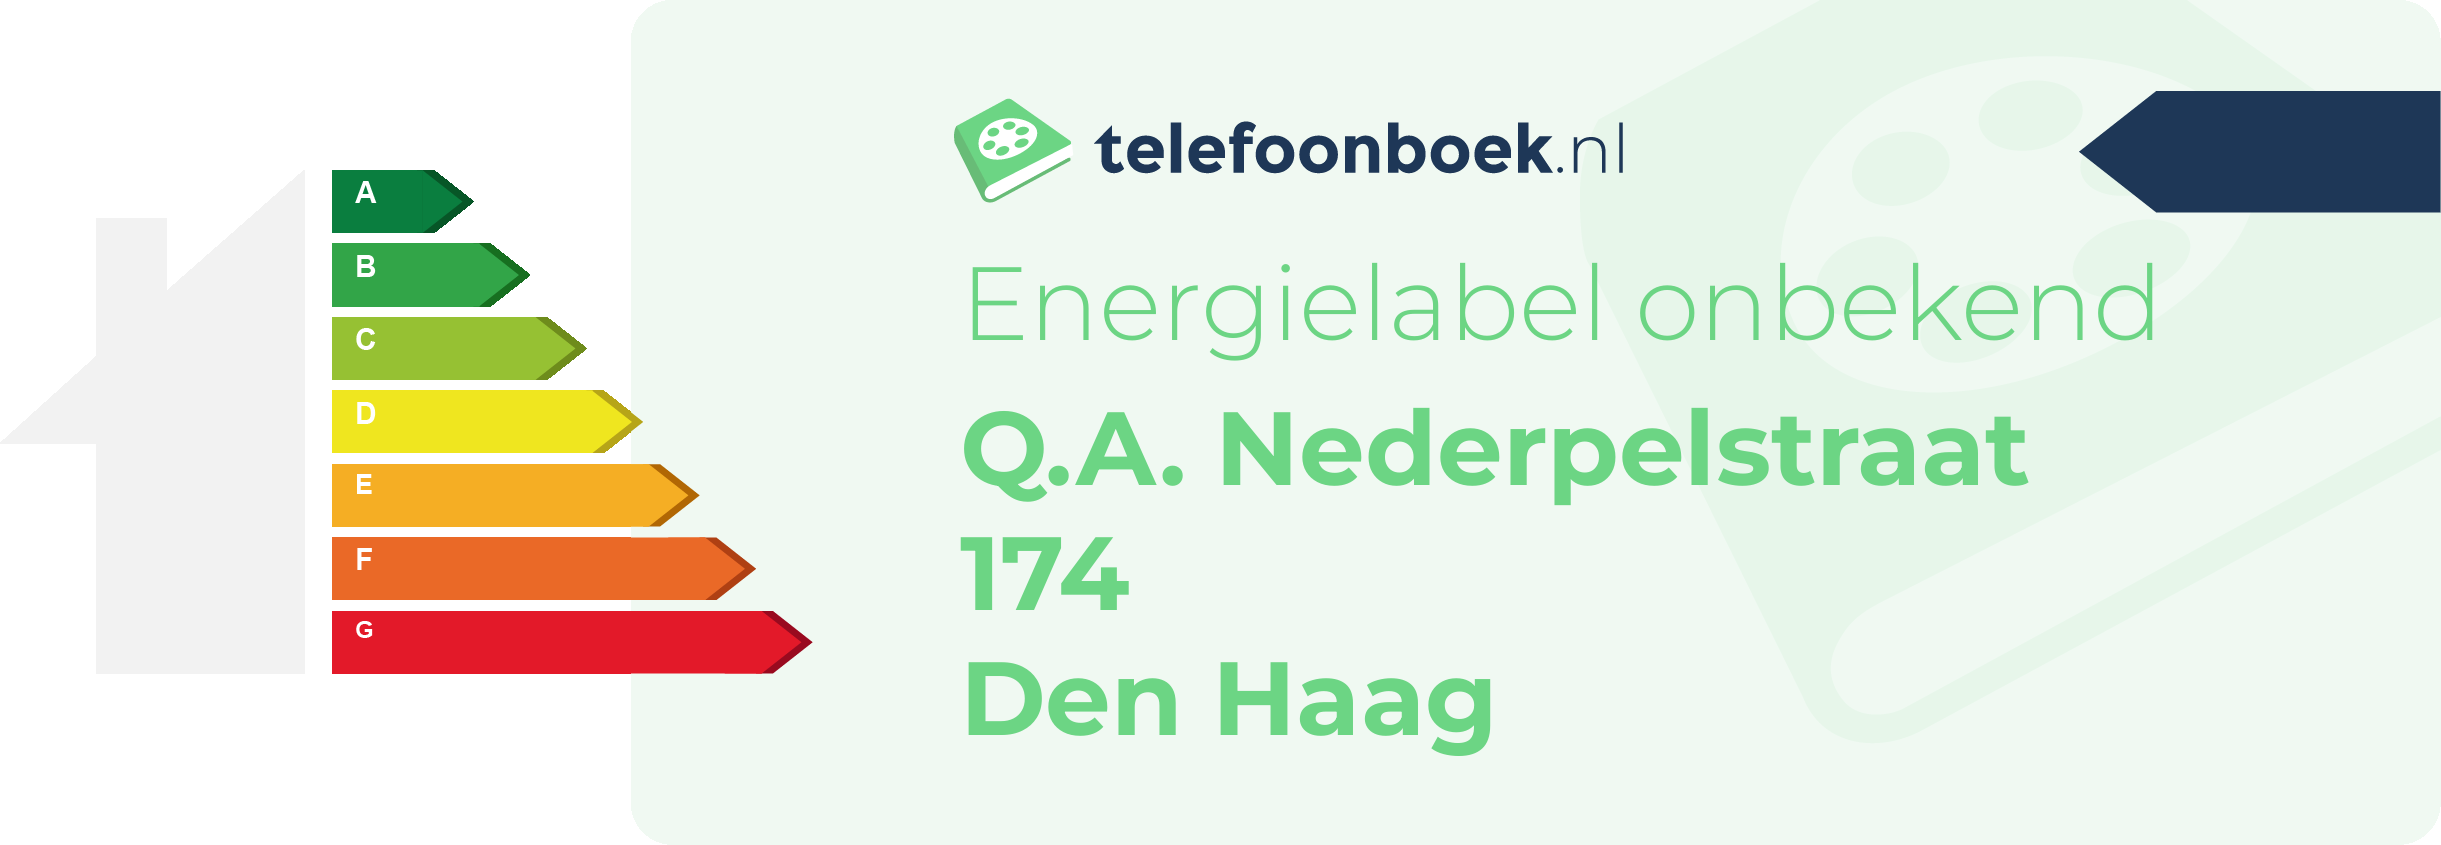 Energielabel Q.A. Nederpelstraat 174 Den Haag